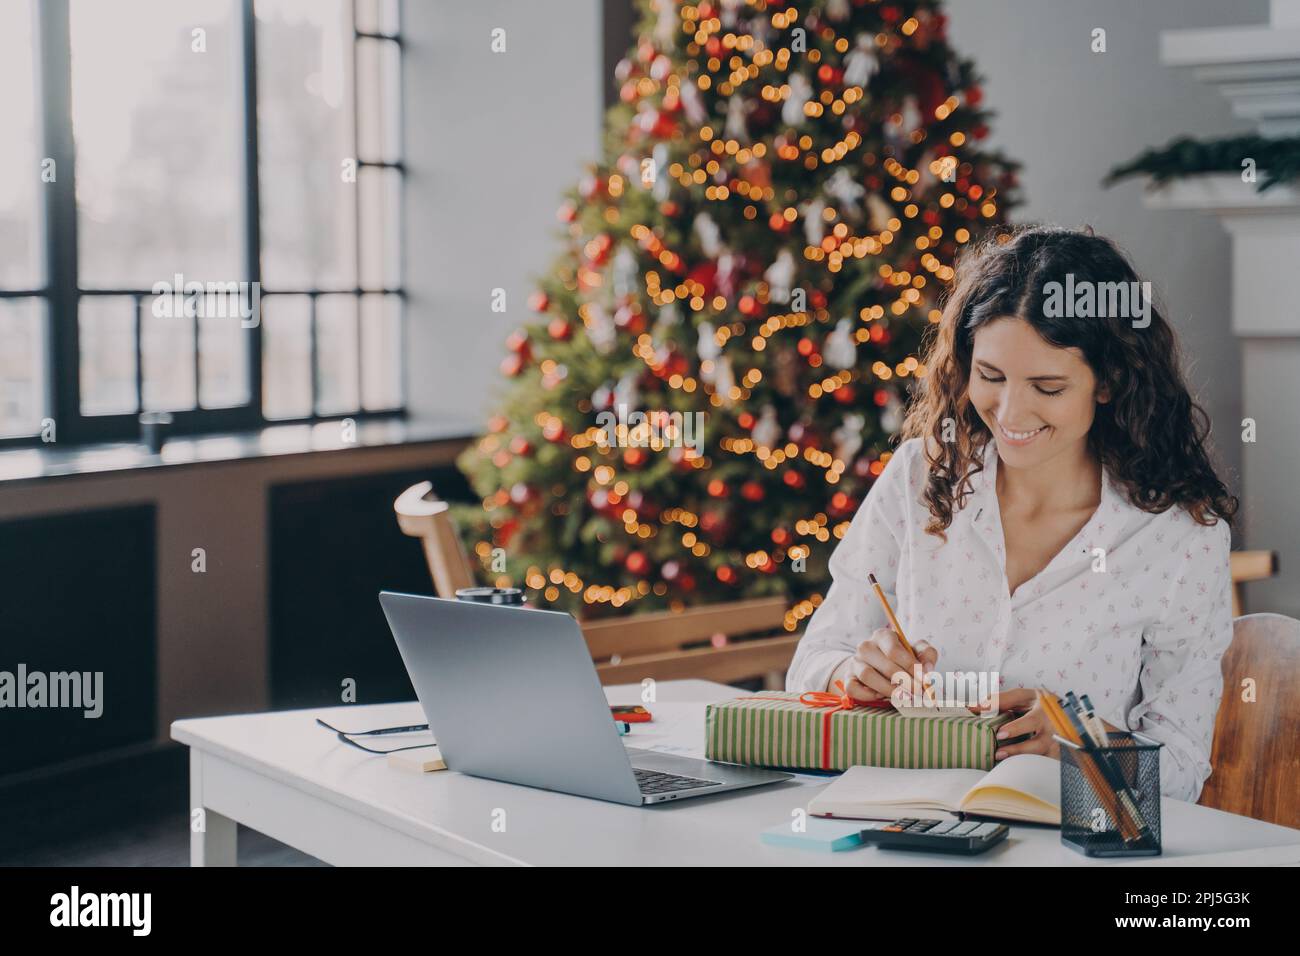 Junge, zufriedene europäische Büroangestellte schrieb einen weihnachtsbrief, Grußkarte mit Urlaubswünschen, während sie mit ihrem Laptop am Arbeitsplatz saß und Stockfoto